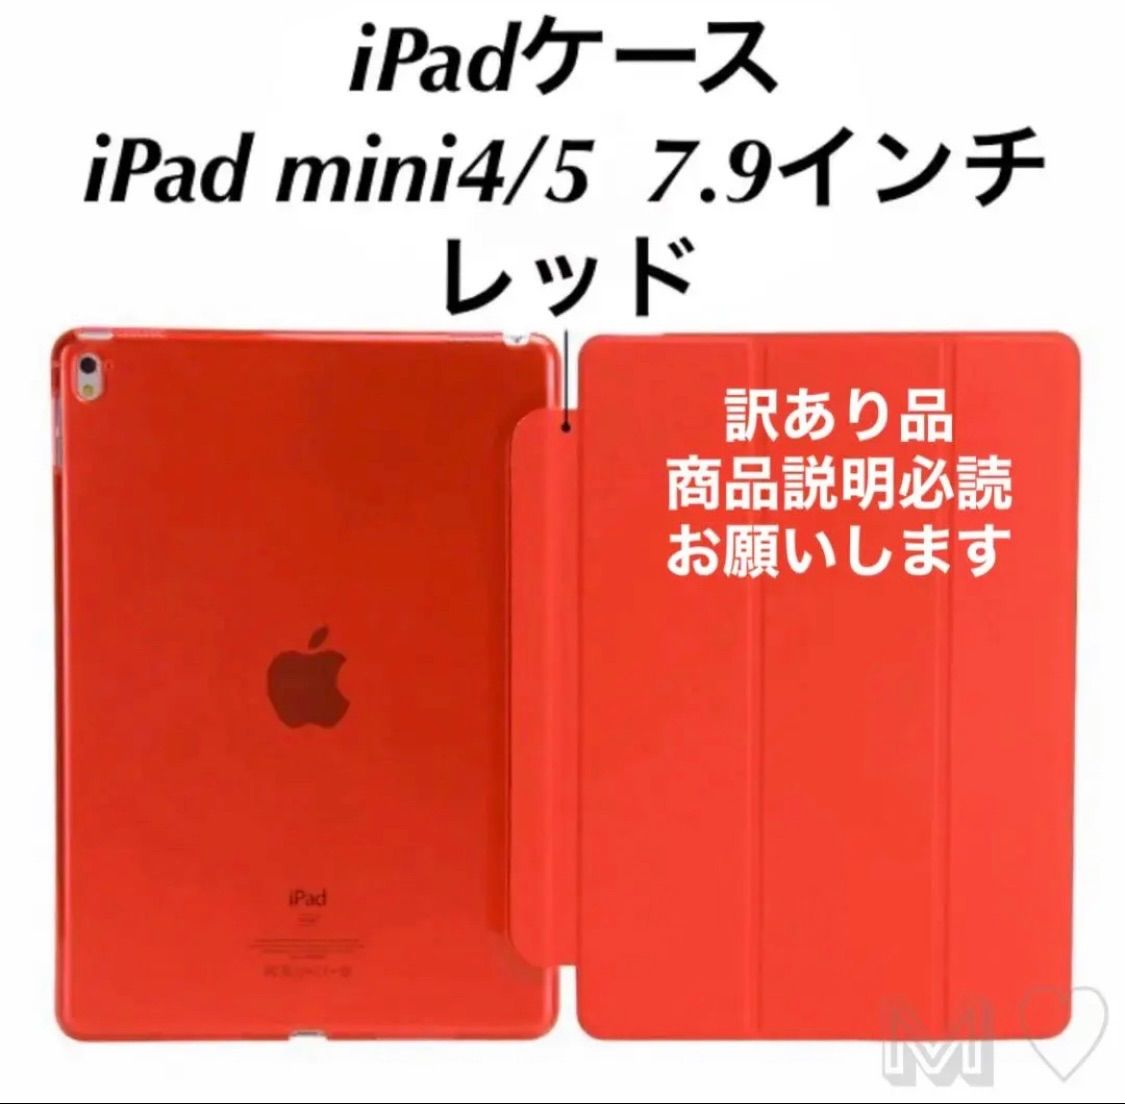 定番 iPadケース 半透明 ipad mini4 5 7.9インチ ブラック fawe.org